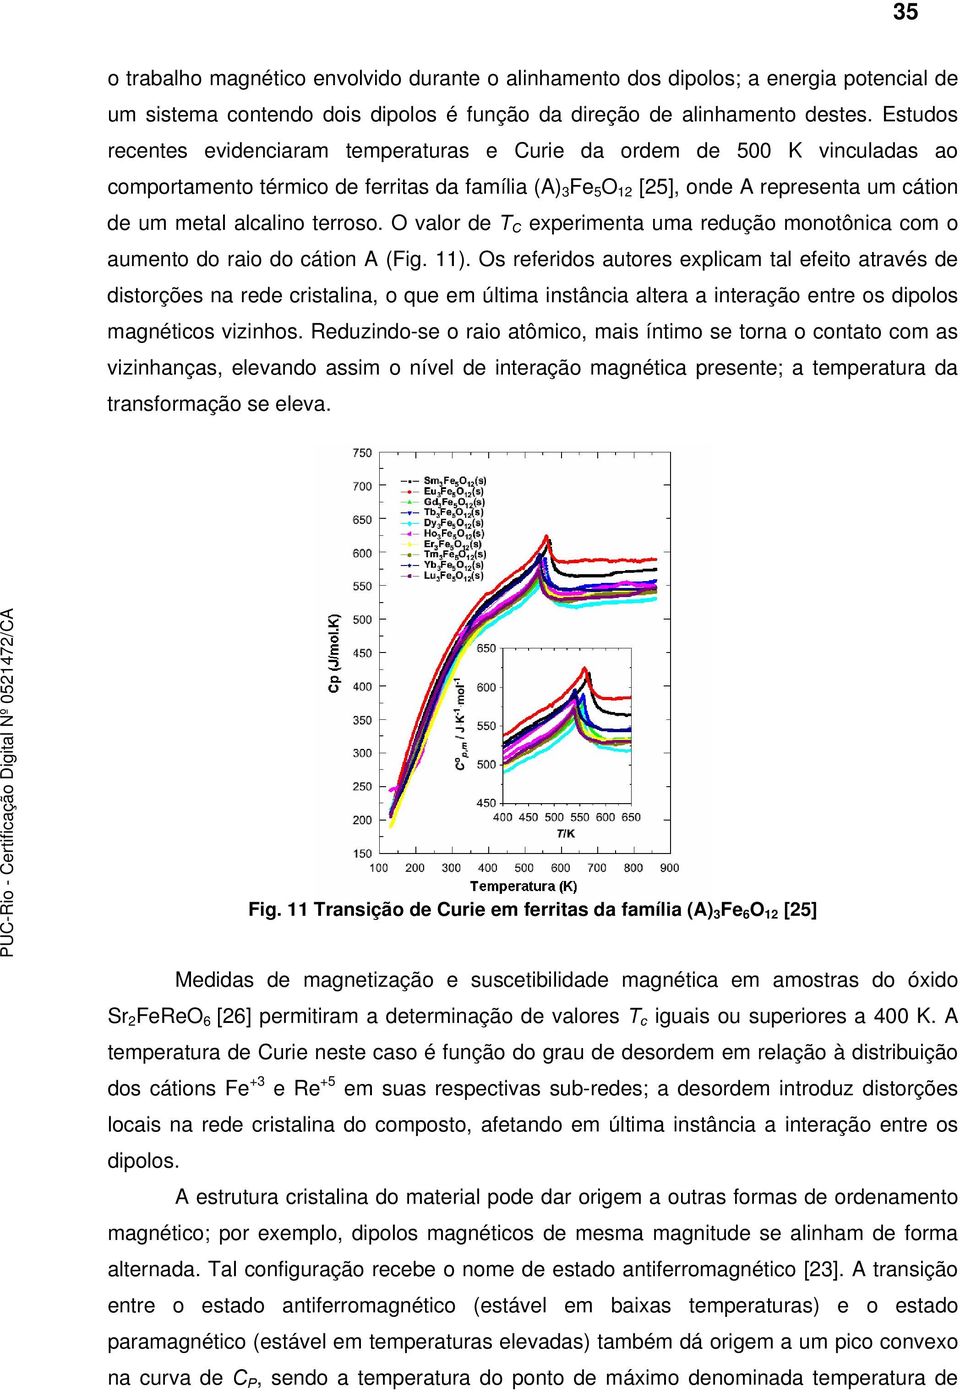 O valor de C experimenta uma redução monotônia om o aumento do raio do átion A (Fig. 11).